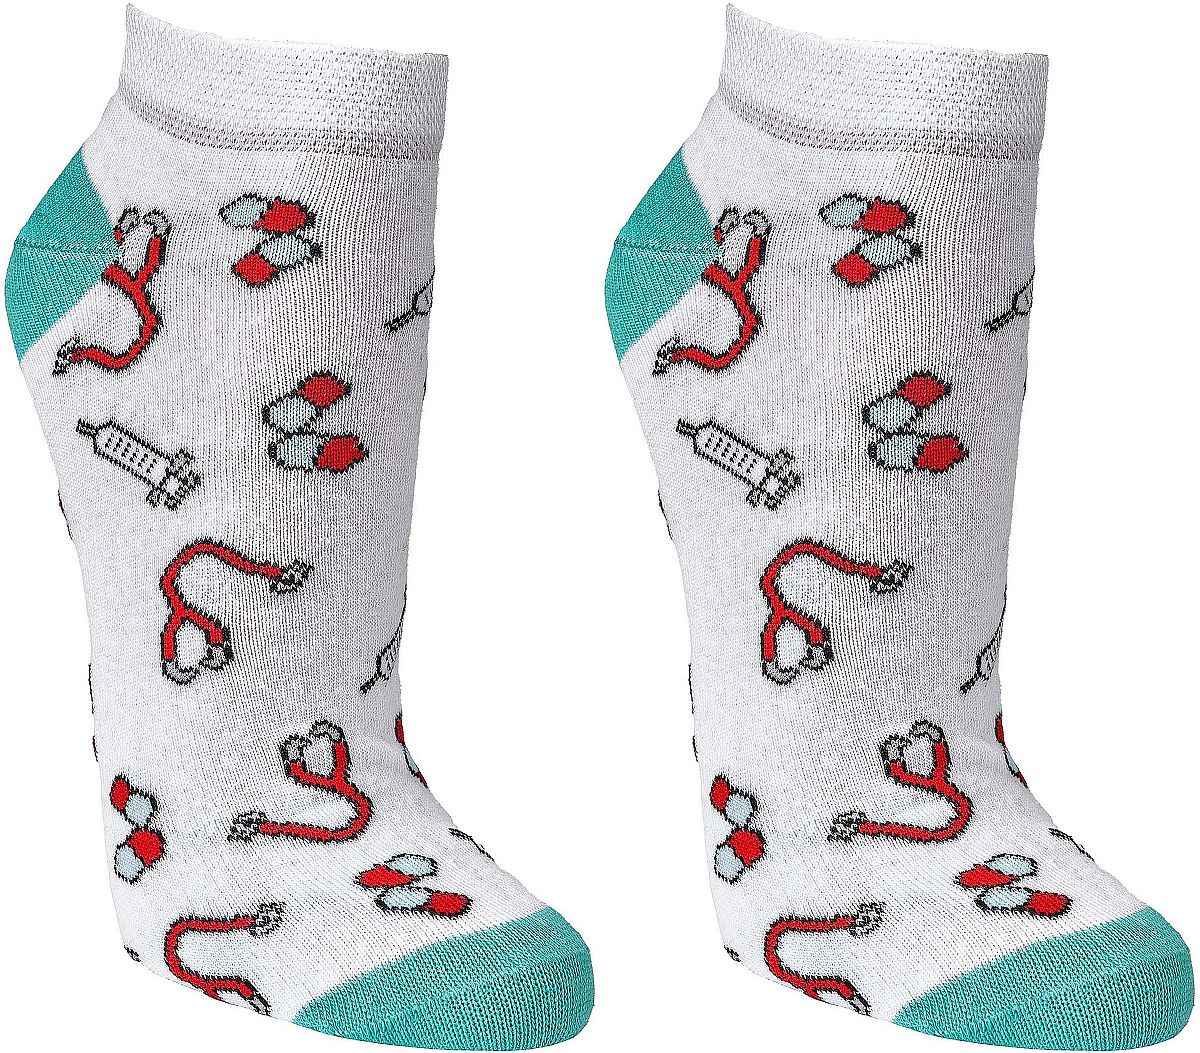  Witzige Sneaker Socken „Medizin“ für Teenager, Damen und Herren, 4 Paar